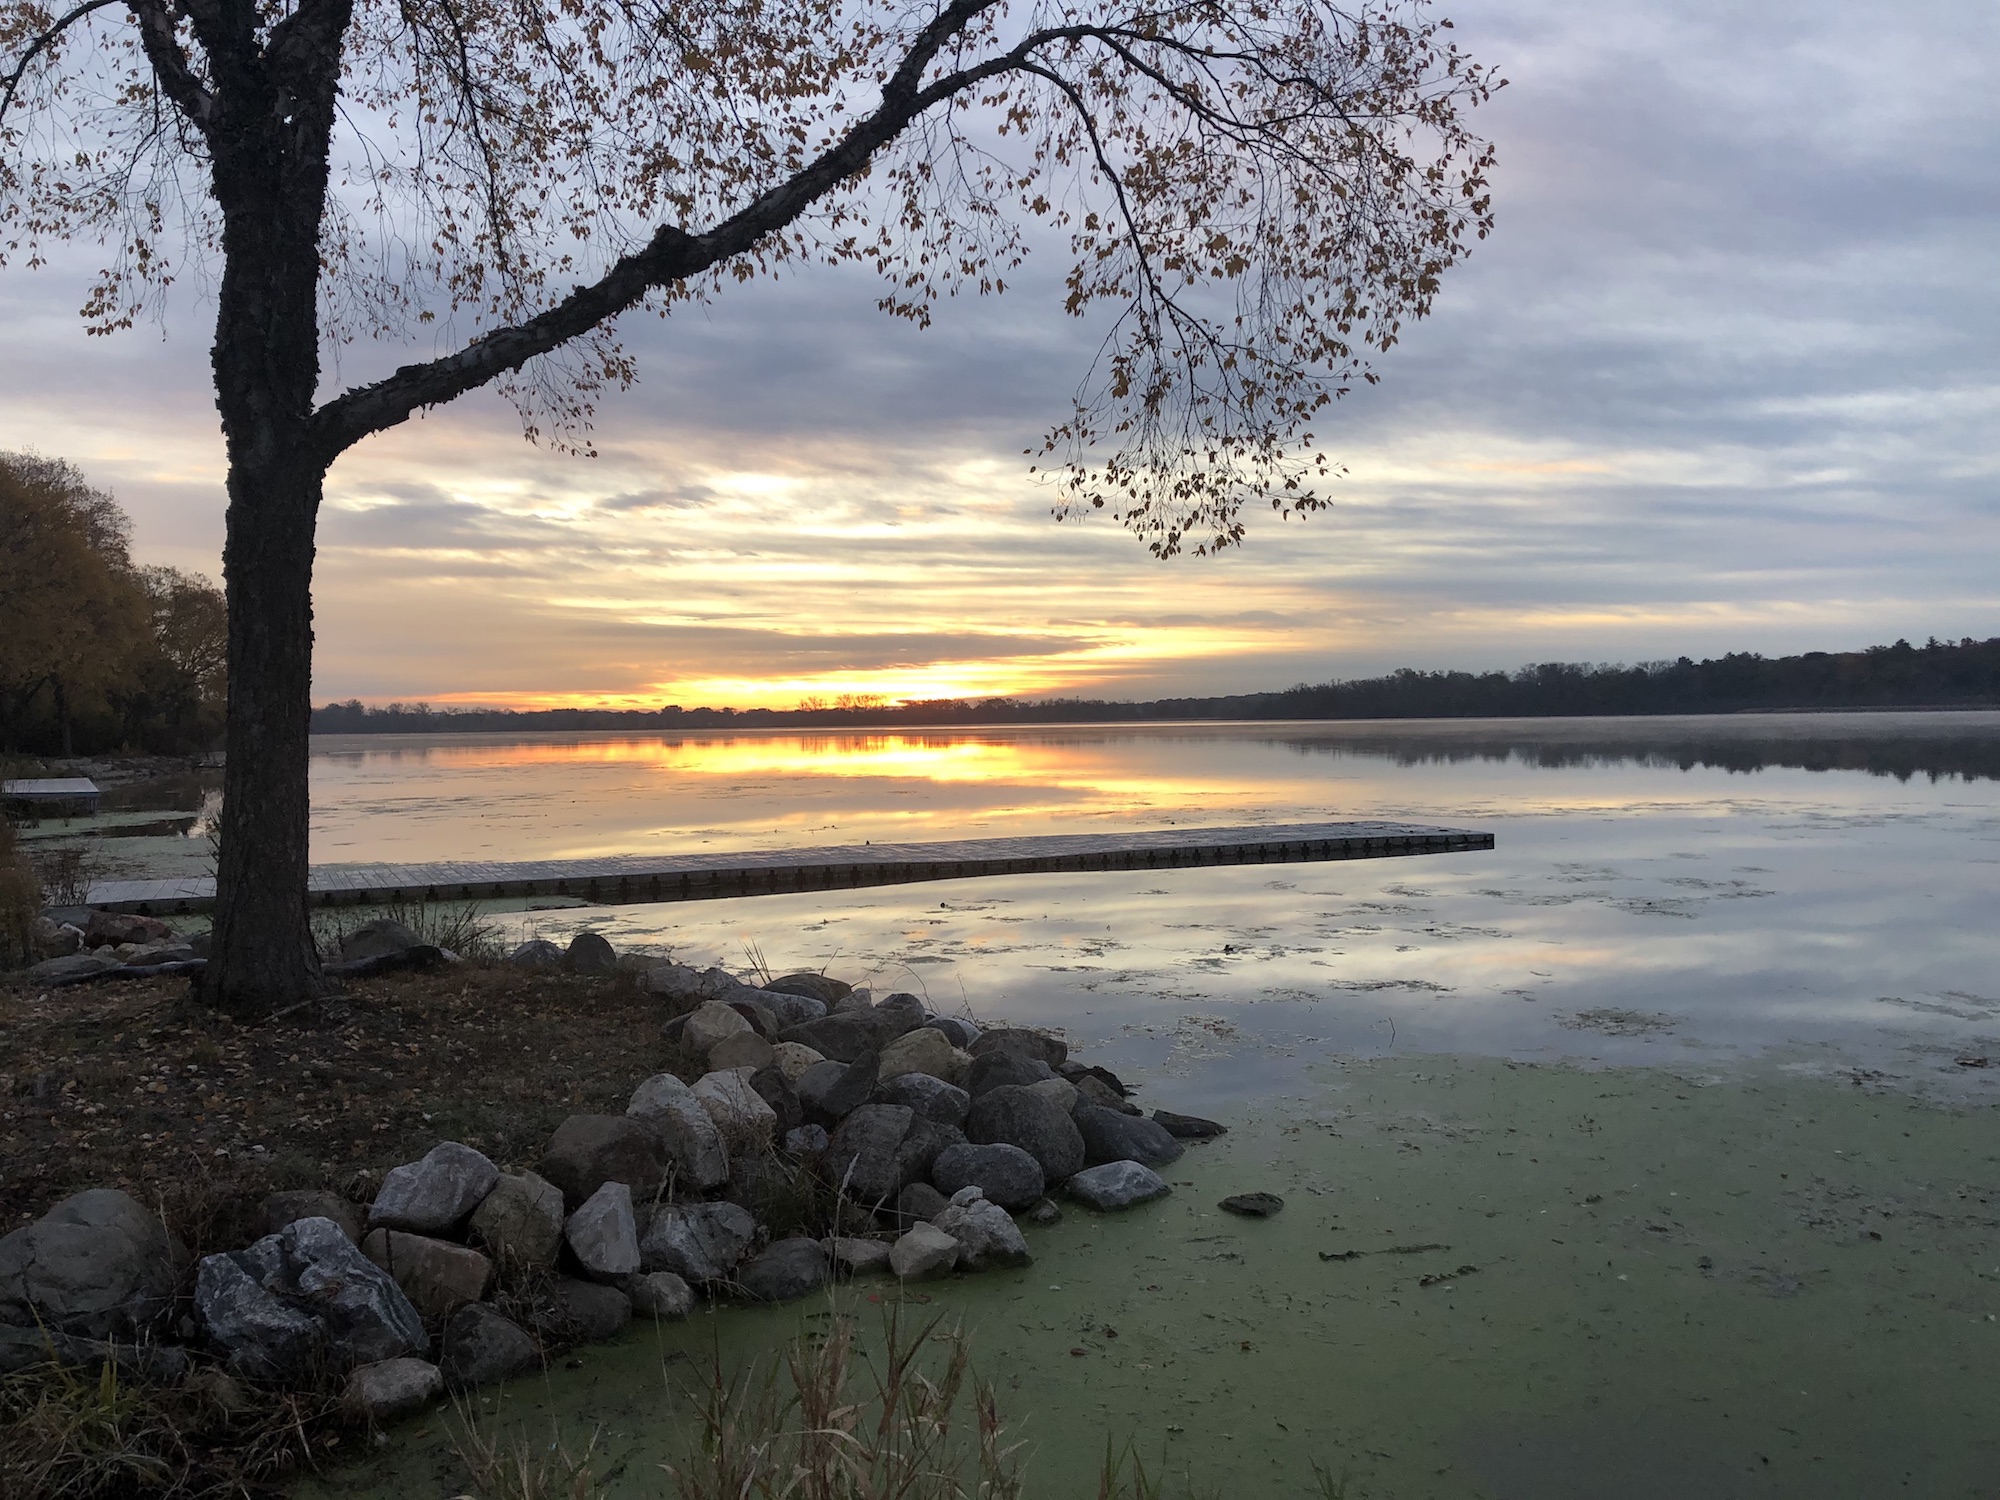 Lake Wingra on October 26, 2019.